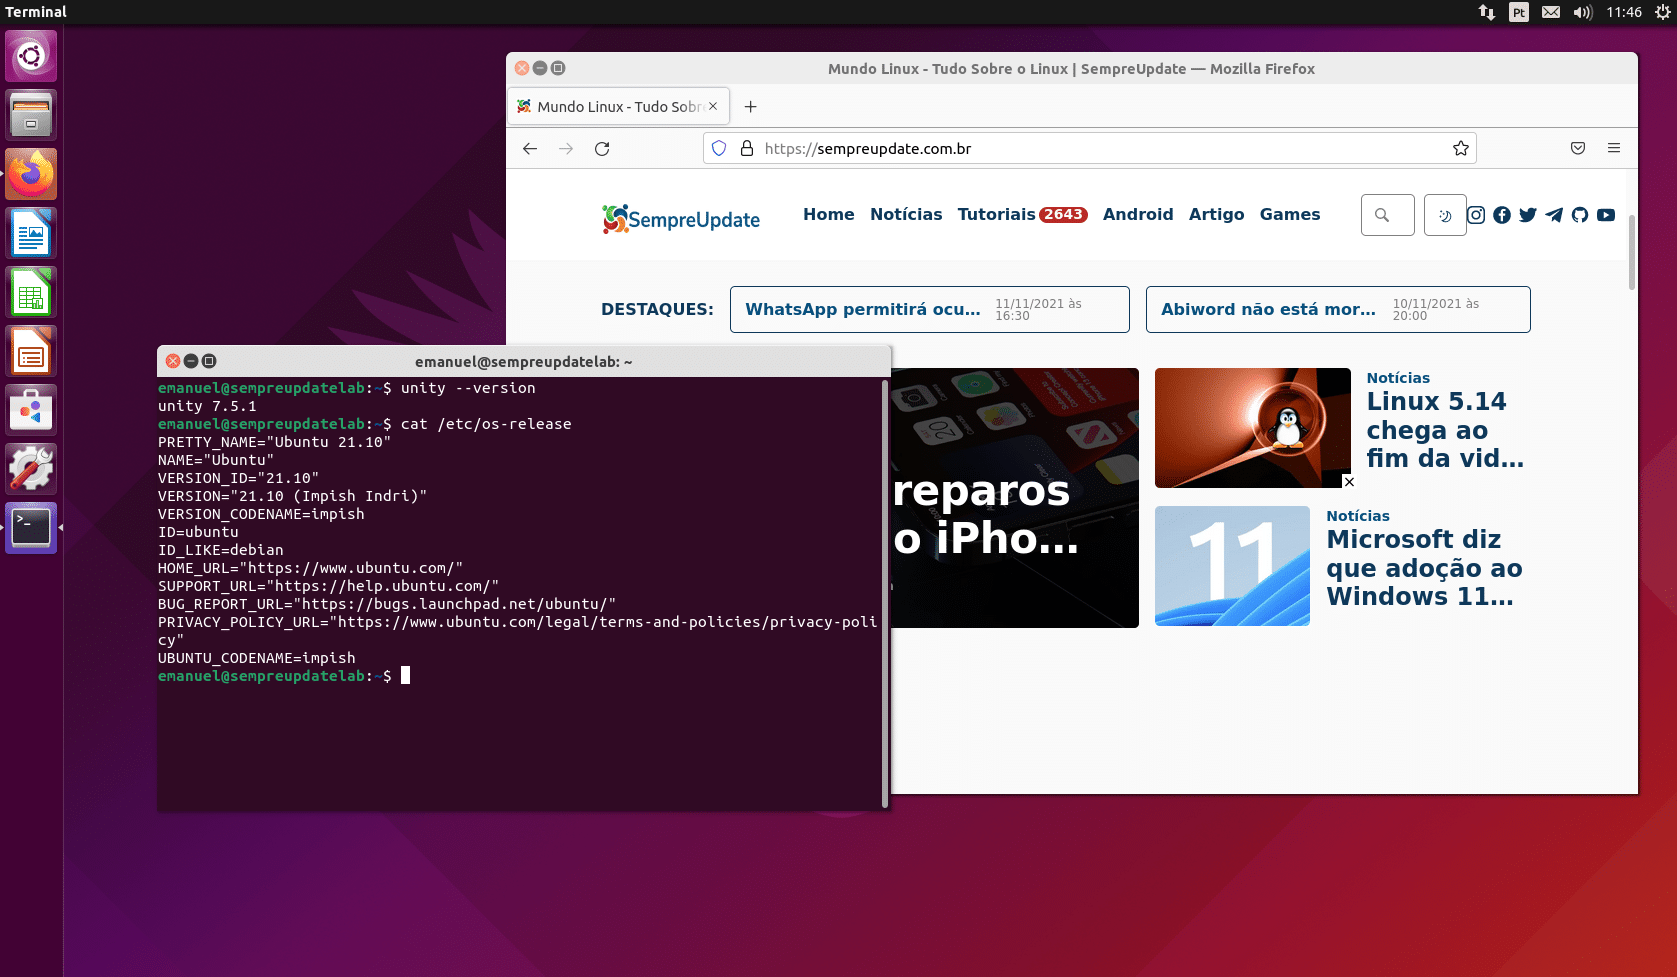 unity-desktop-pode-voltar-para-o-ubuntu-como-unityx